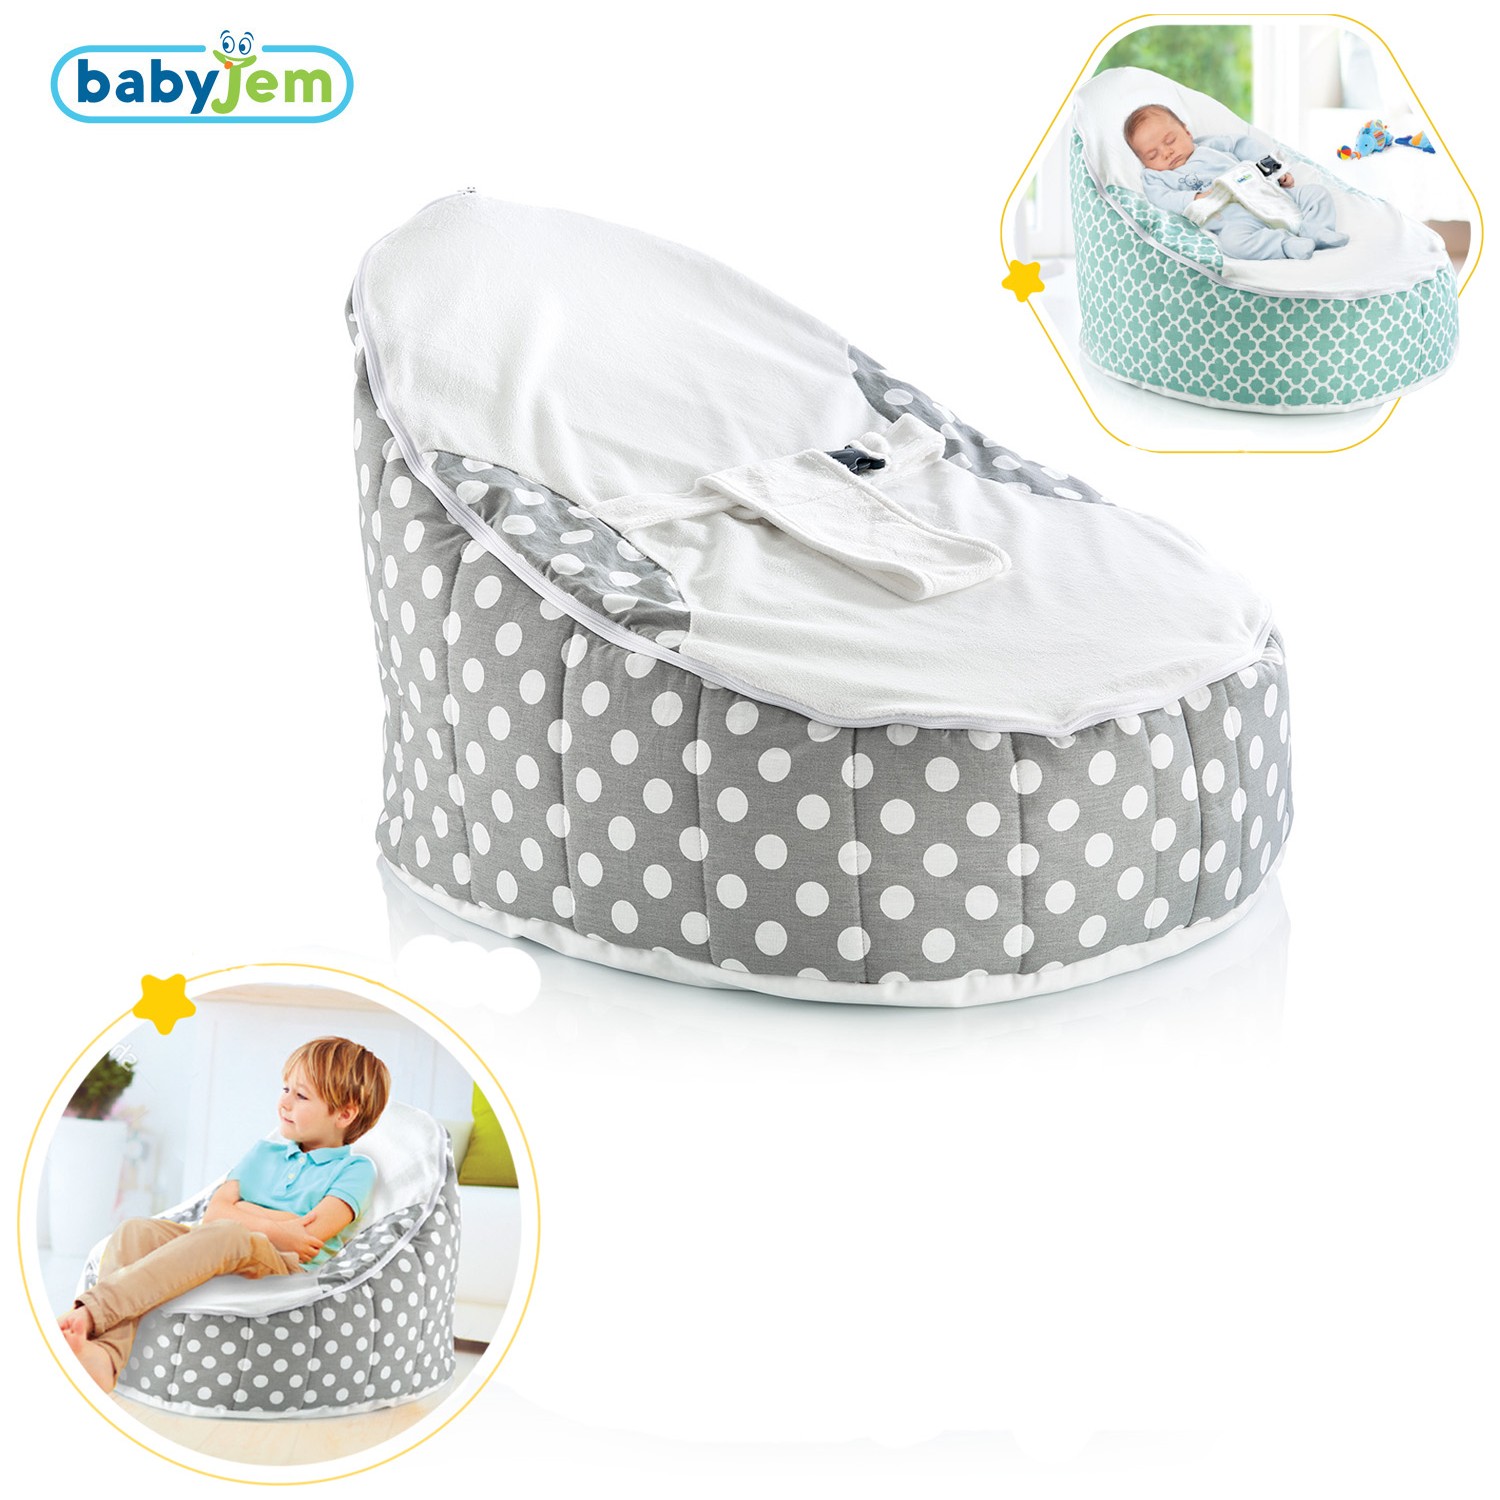 Baby Jem ART348 Bebek Fasulye Yatak Fiyatı Taksit Seçenekleri